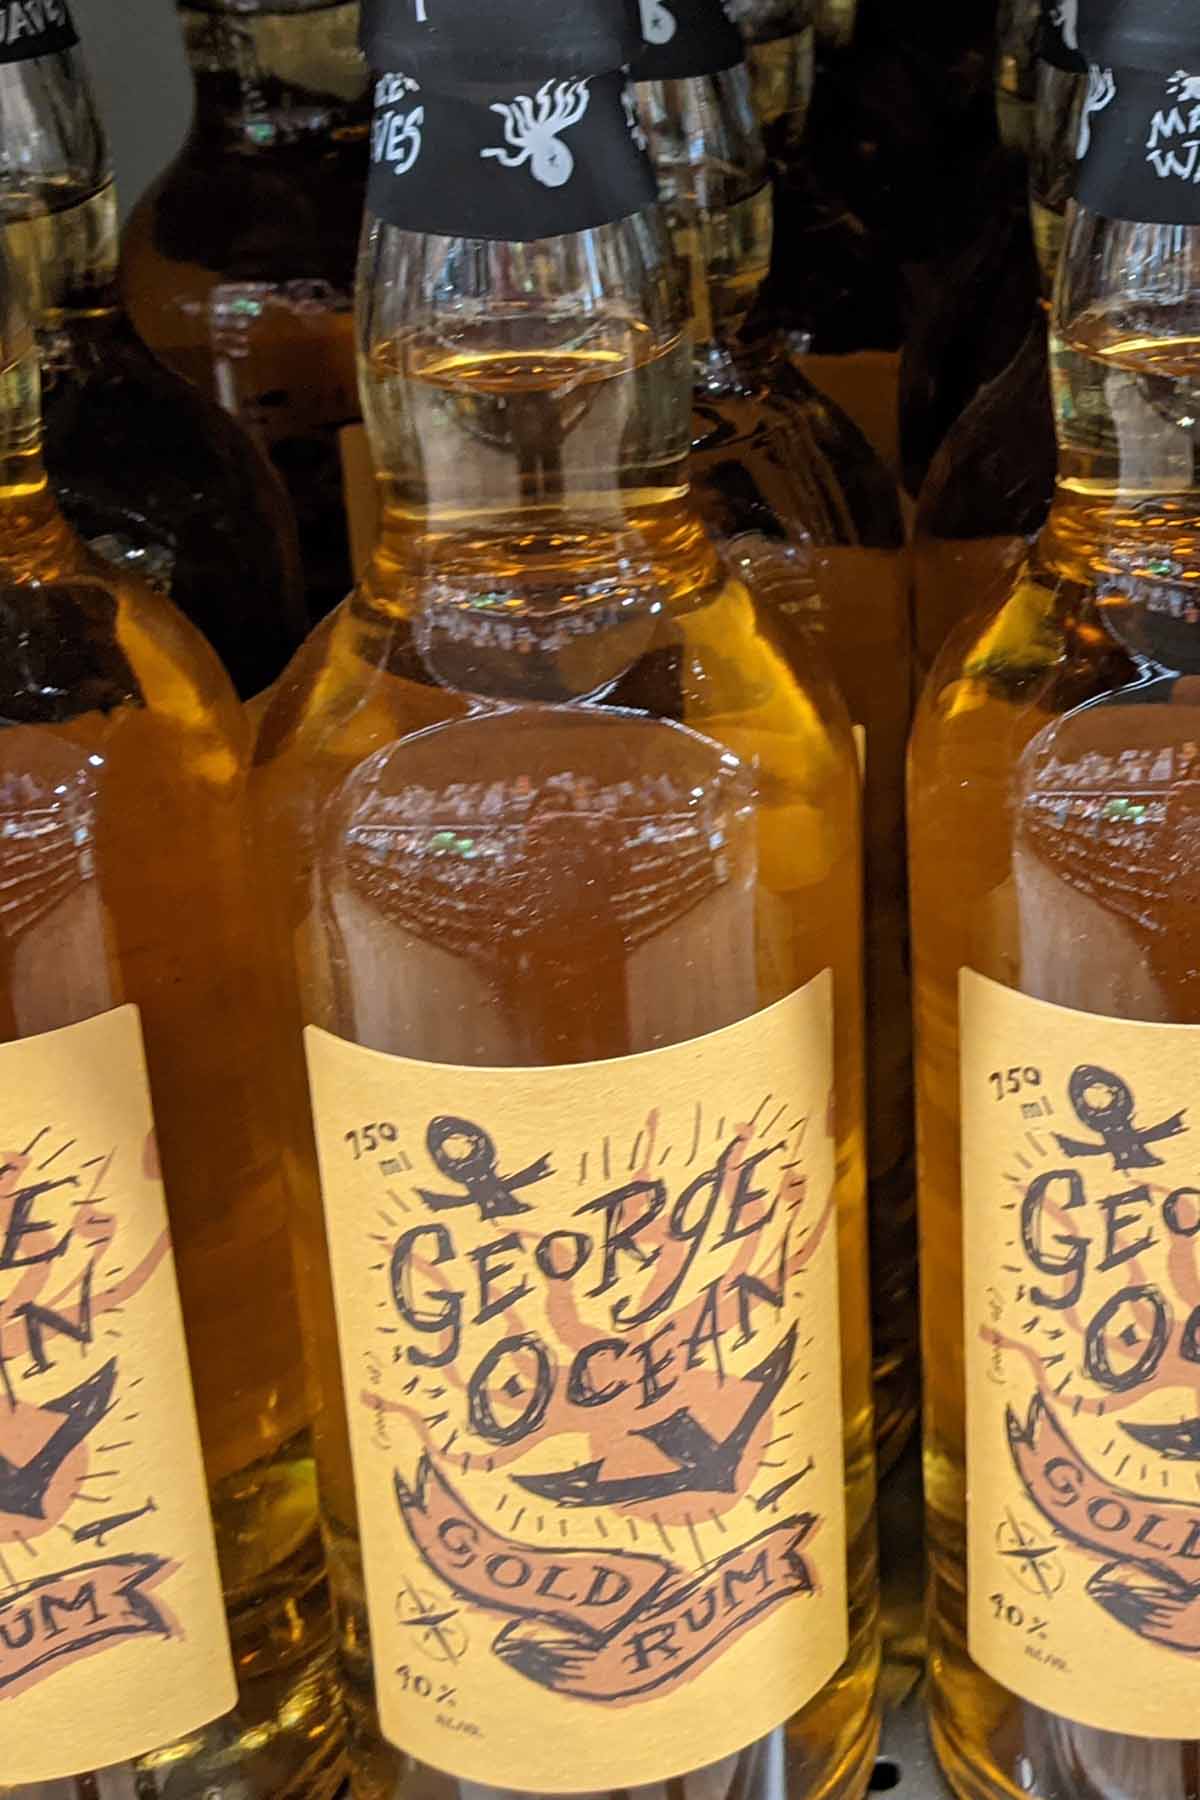 bottle of George Ocean Gold rum.